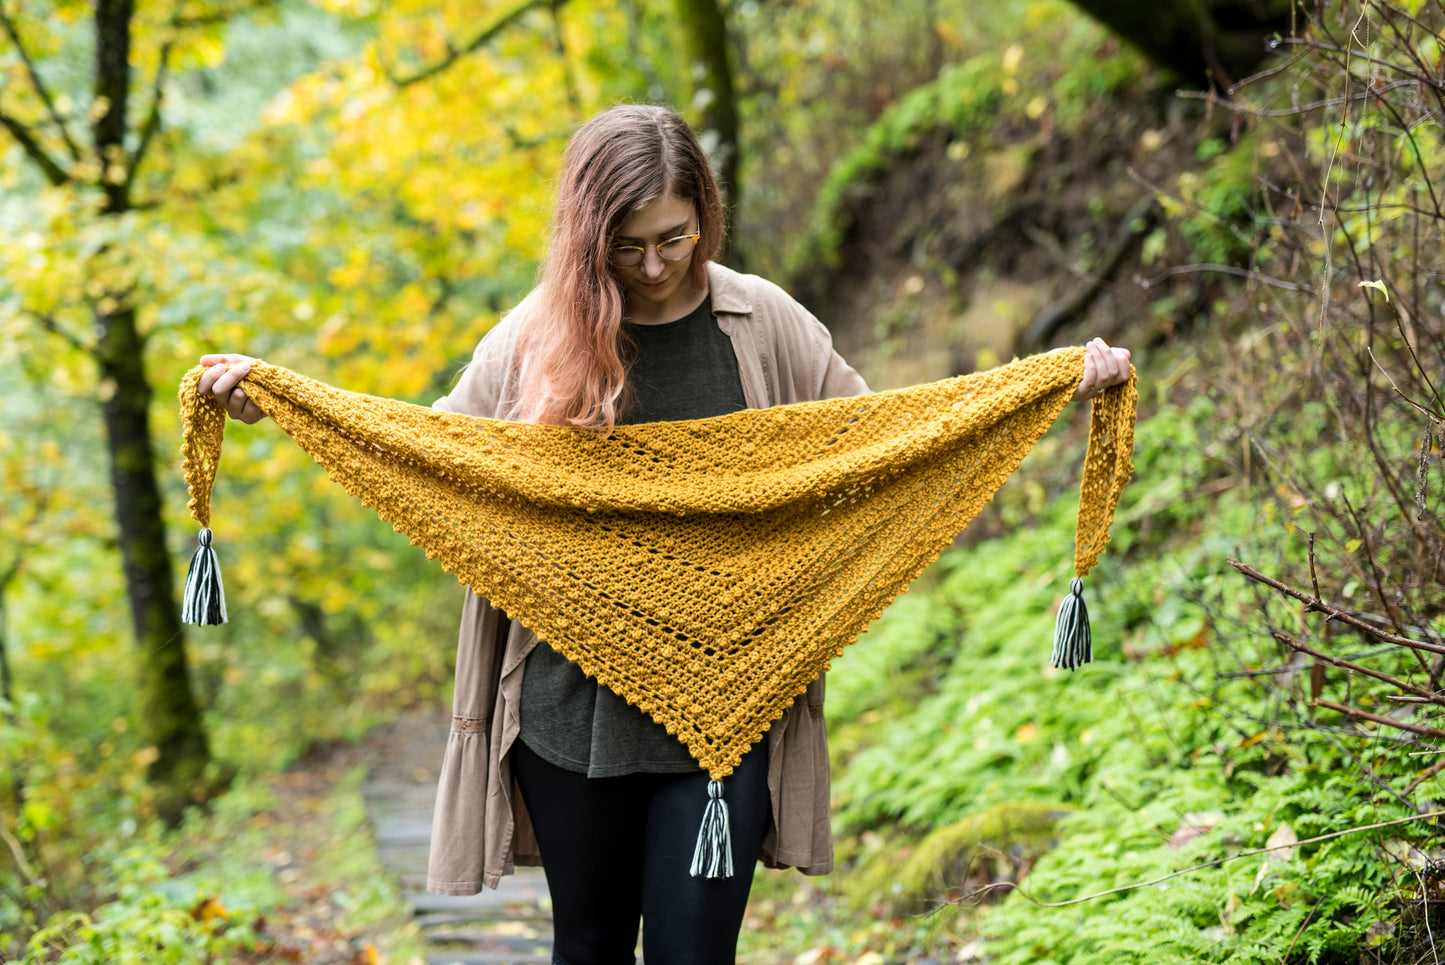 Crochet Pattern: The Meadowlark Scarf